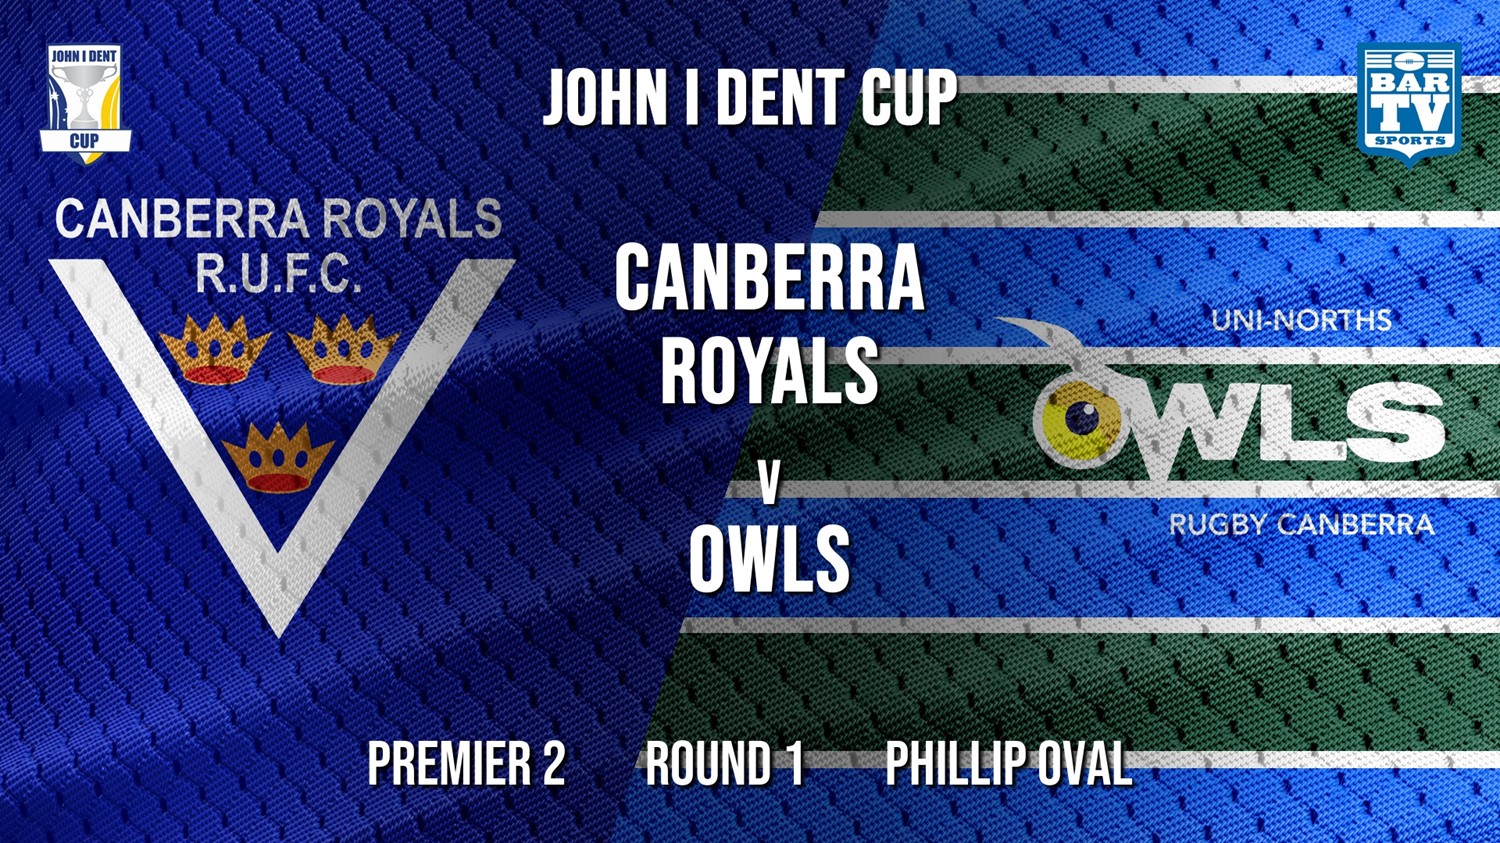 John I Dent Round 1 - Premier 2 - Canberra Royals v UNI-Norths Minigame Slate Image